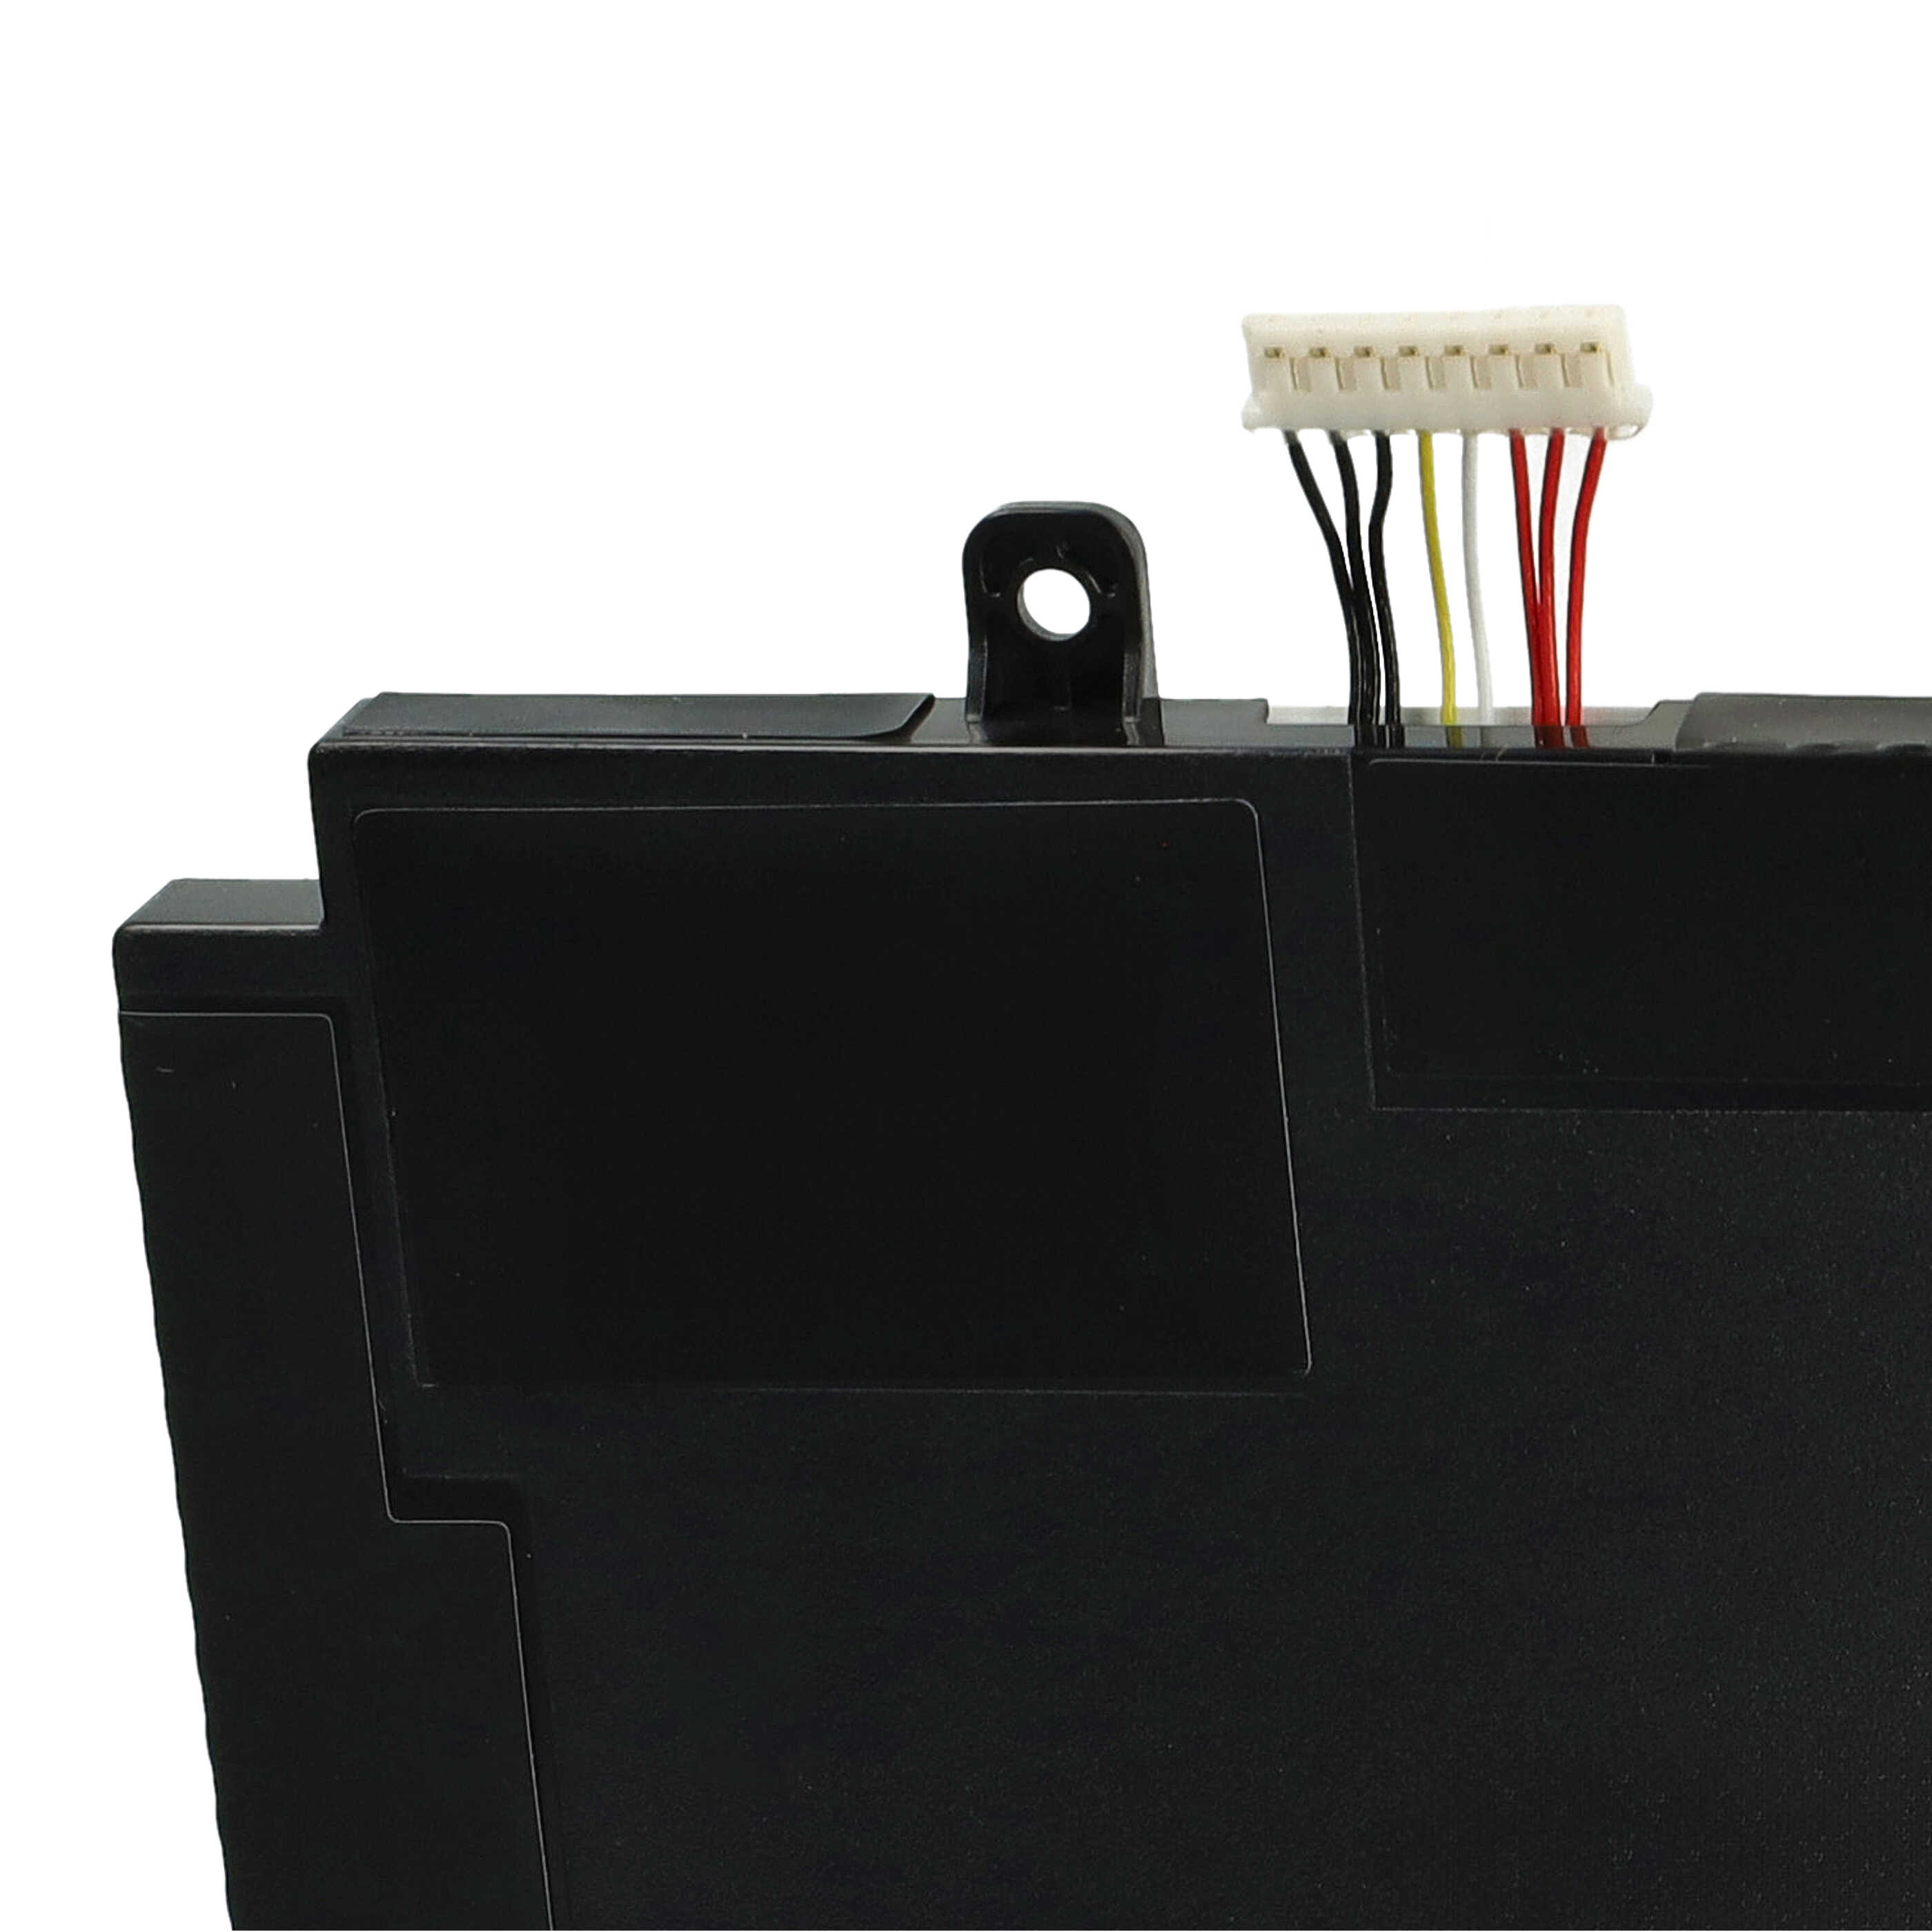 Akumulator do laptopa zamiennik Asus A41LK9H, 3ICP7/60/80, 0B200-02910000 - 4100 mAh 11,1 V LiPo, czarny